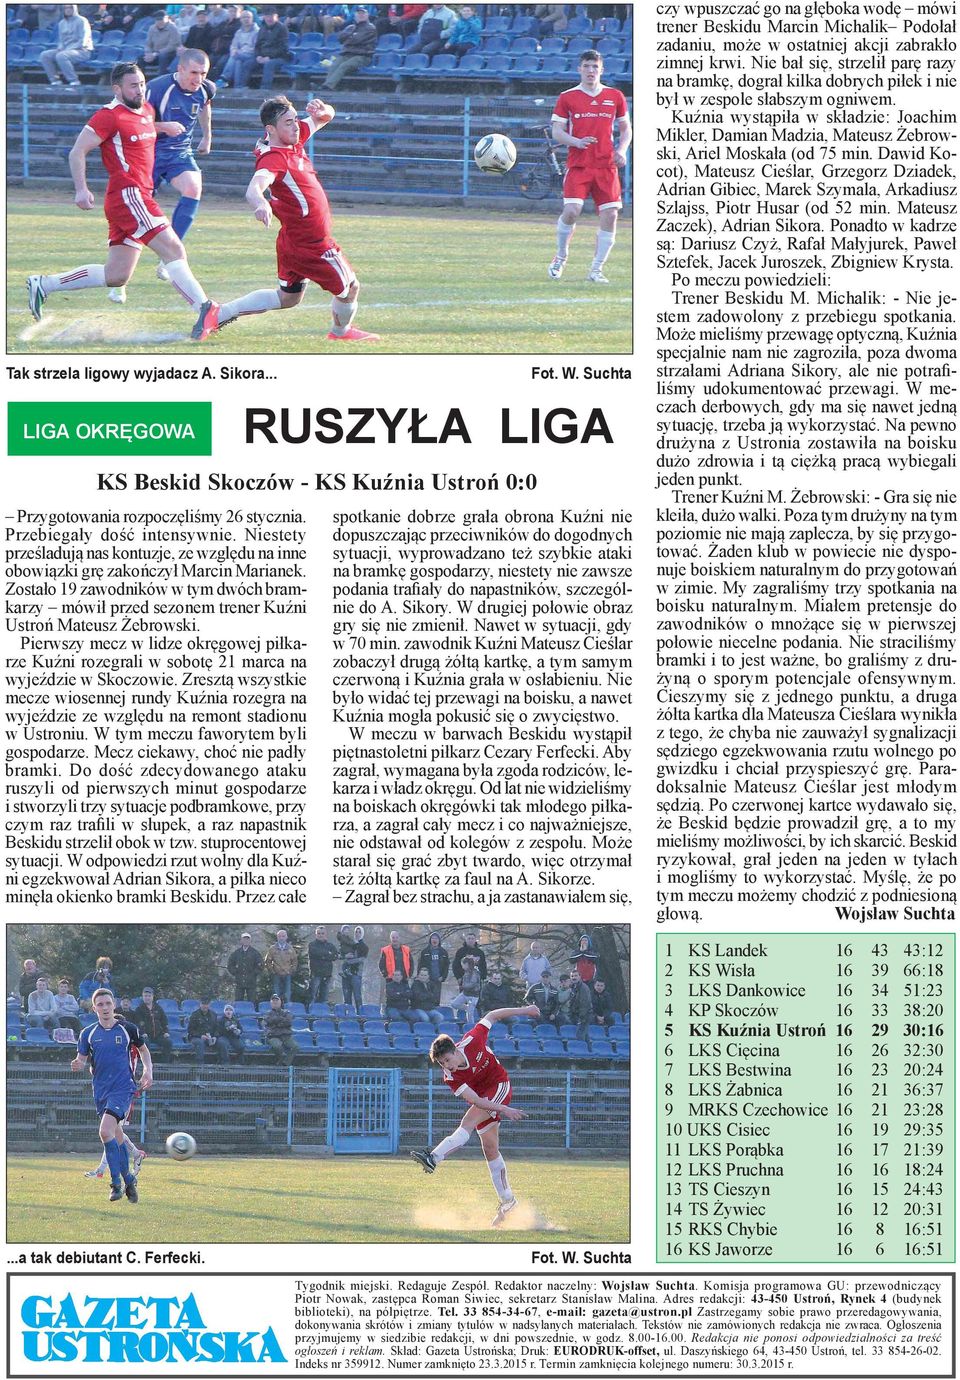 Pierwszy mecz w lidze okręgowej piłkarze Kuźni rozegrali w sobotę 21 marca na wyjeździe w Skoczowie.